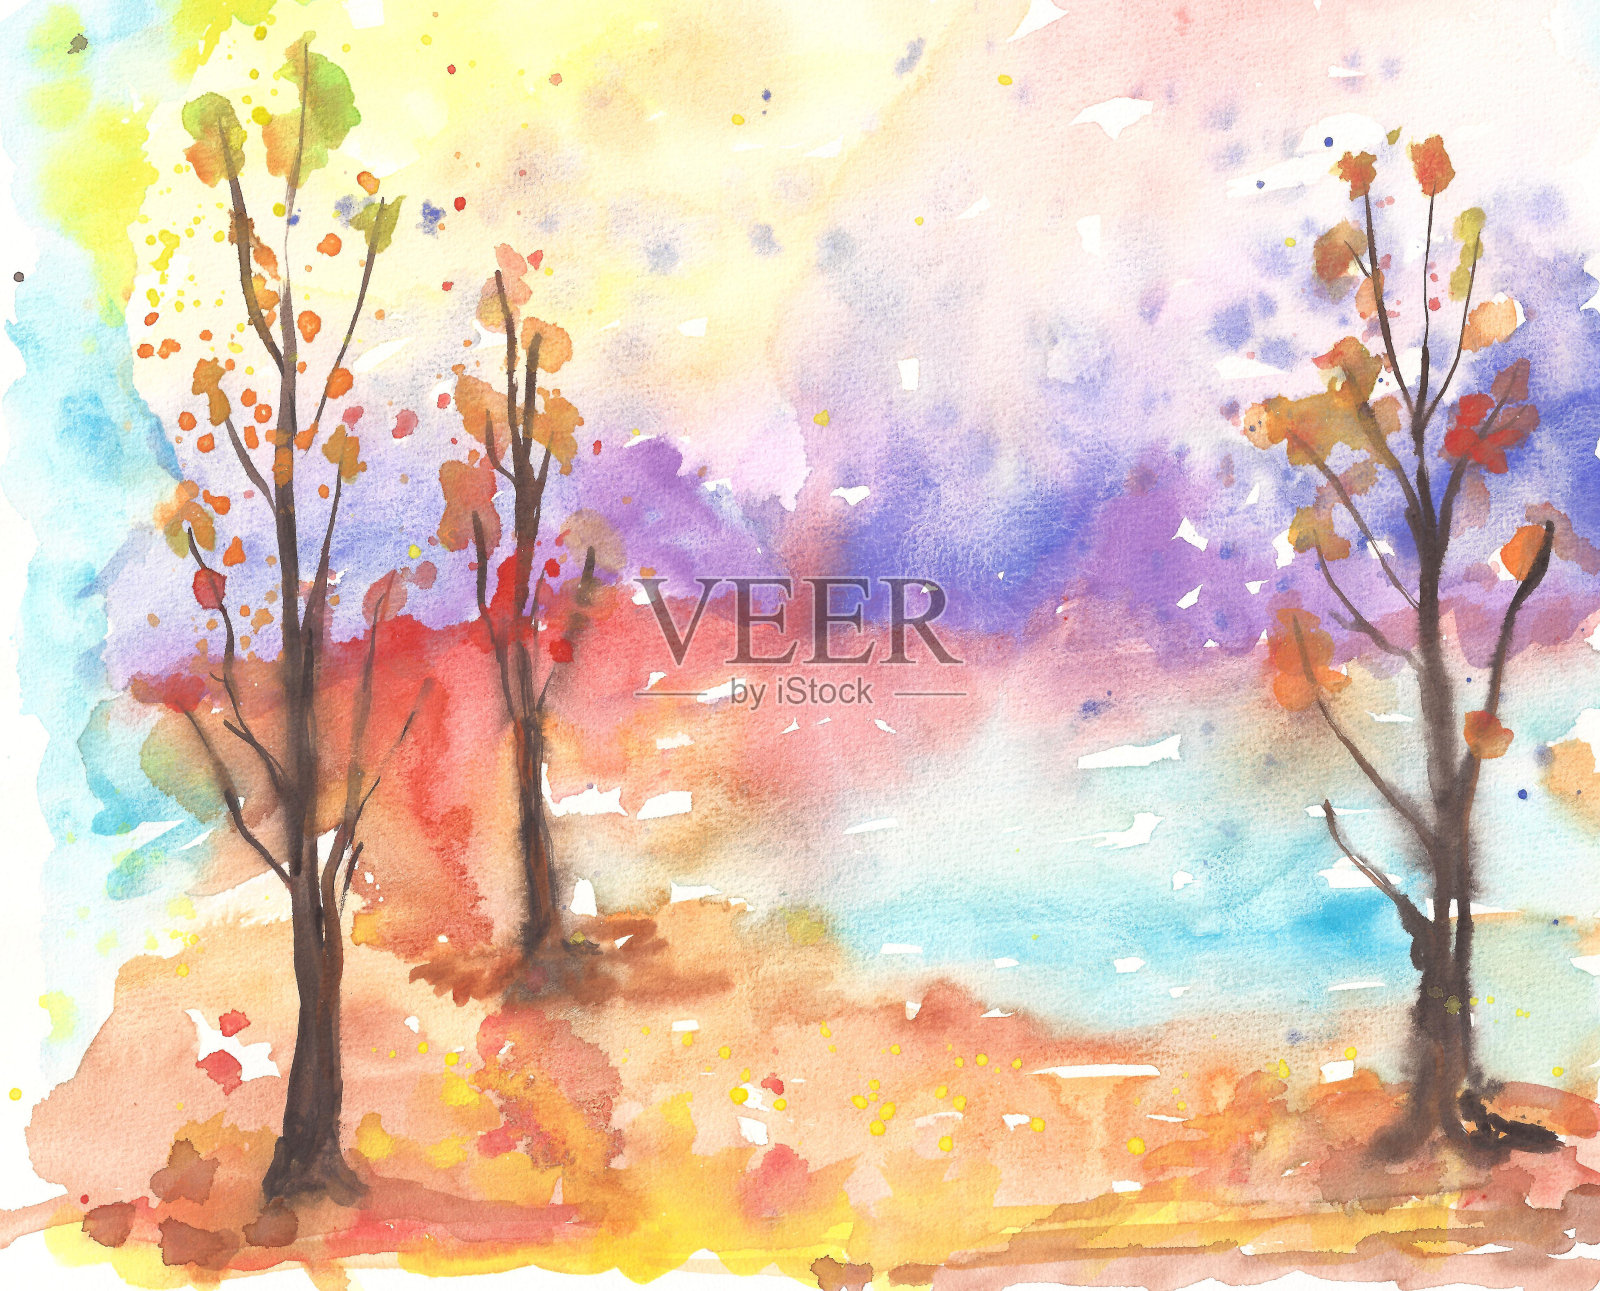 水彩画秋天的树木和五颜六色的森林景观插画图片素材